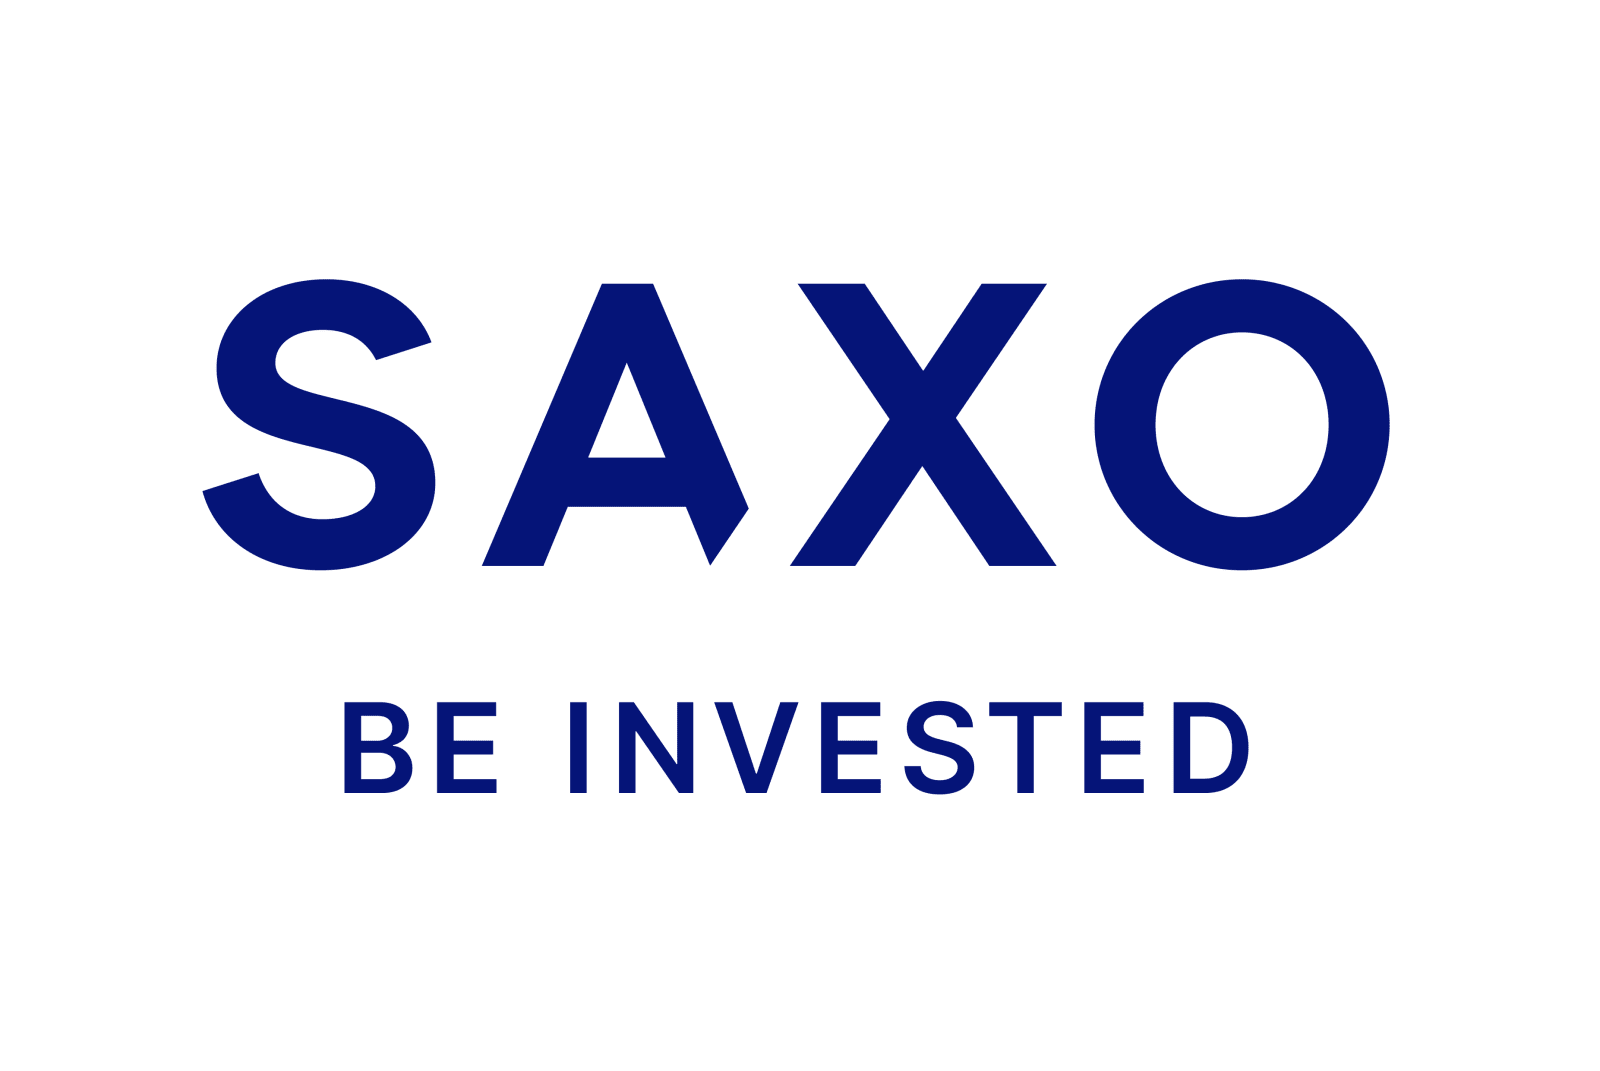 SAXO Capital Markets